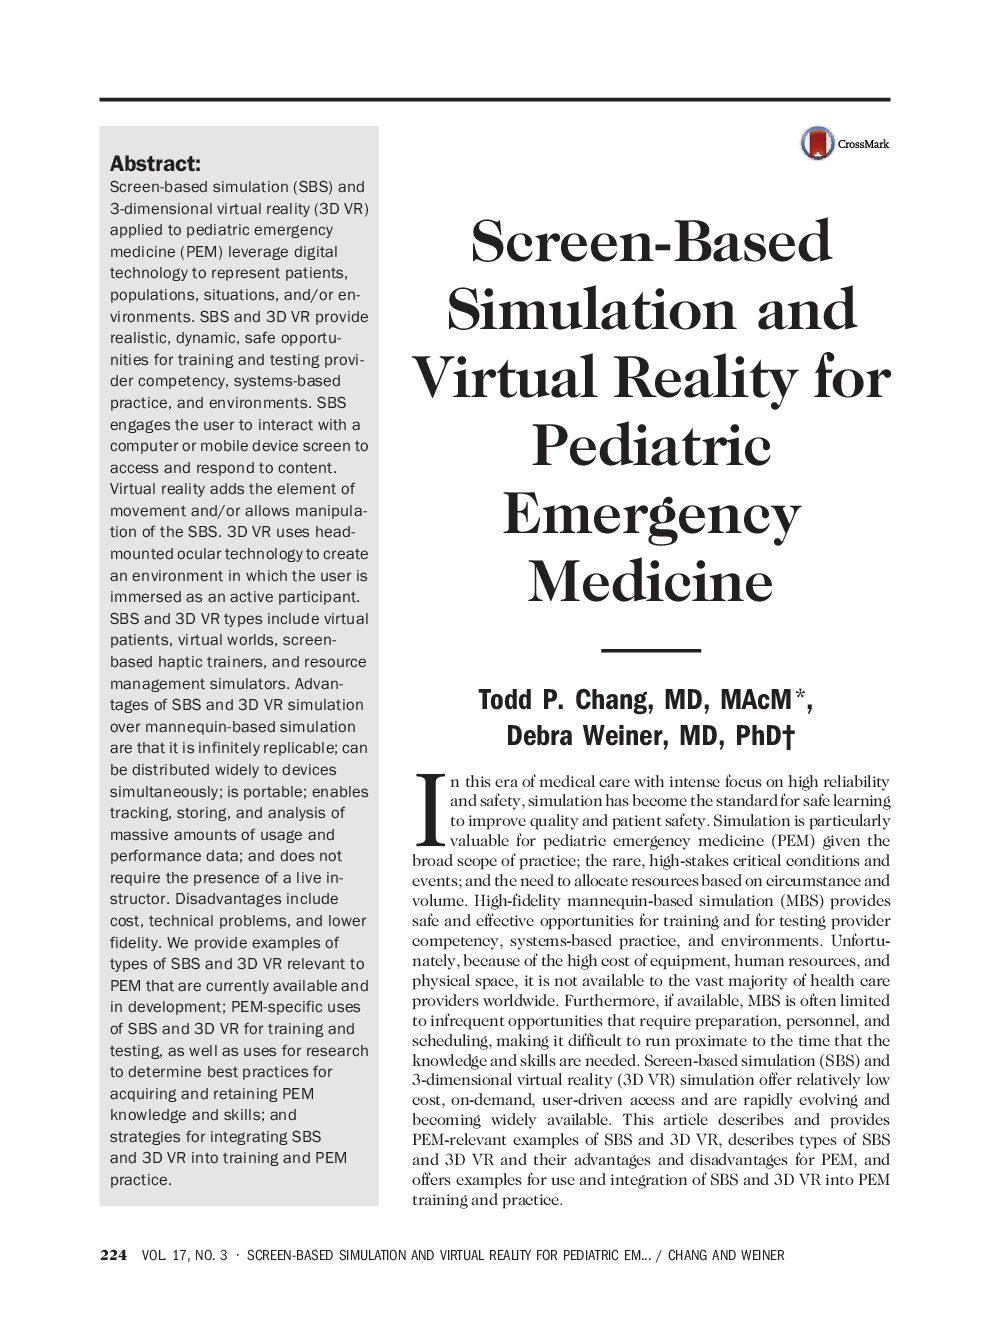 شبیه سازی بر اساس صفحه نمایش و واقعیت مجازی برای طب اورژانس کودکان 